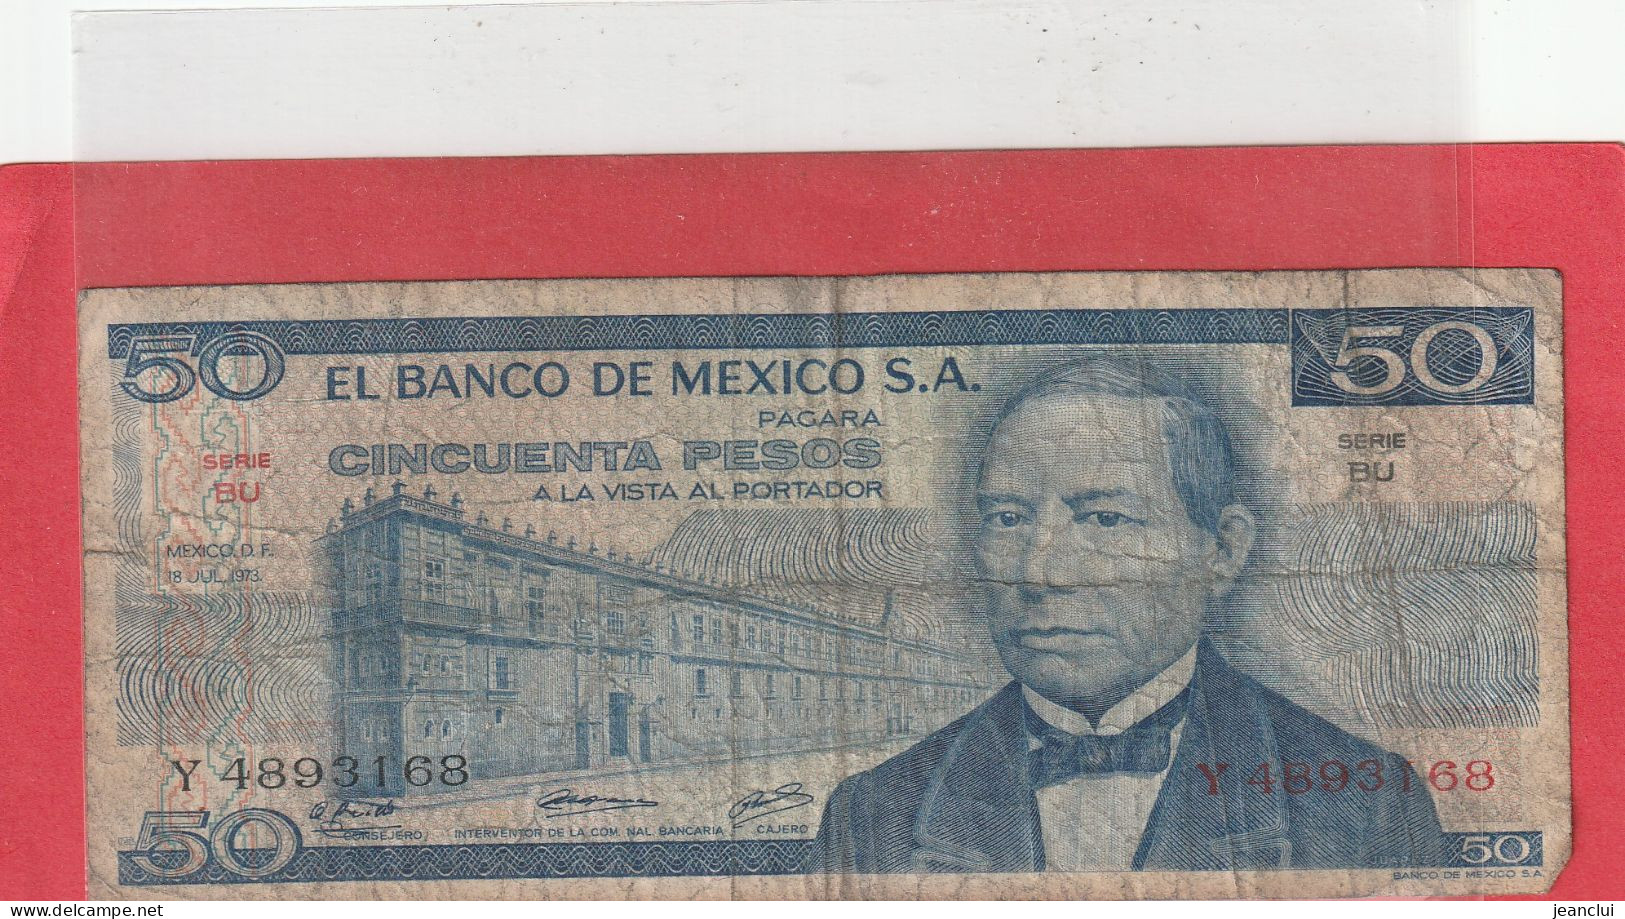 EL BANCO DE MEXICO S.A.  .  50 PESOS  .  18-7-1973  .  N°   Y 4893168 .  2 SCANNES  .  BILLET TRES USITE - Messico